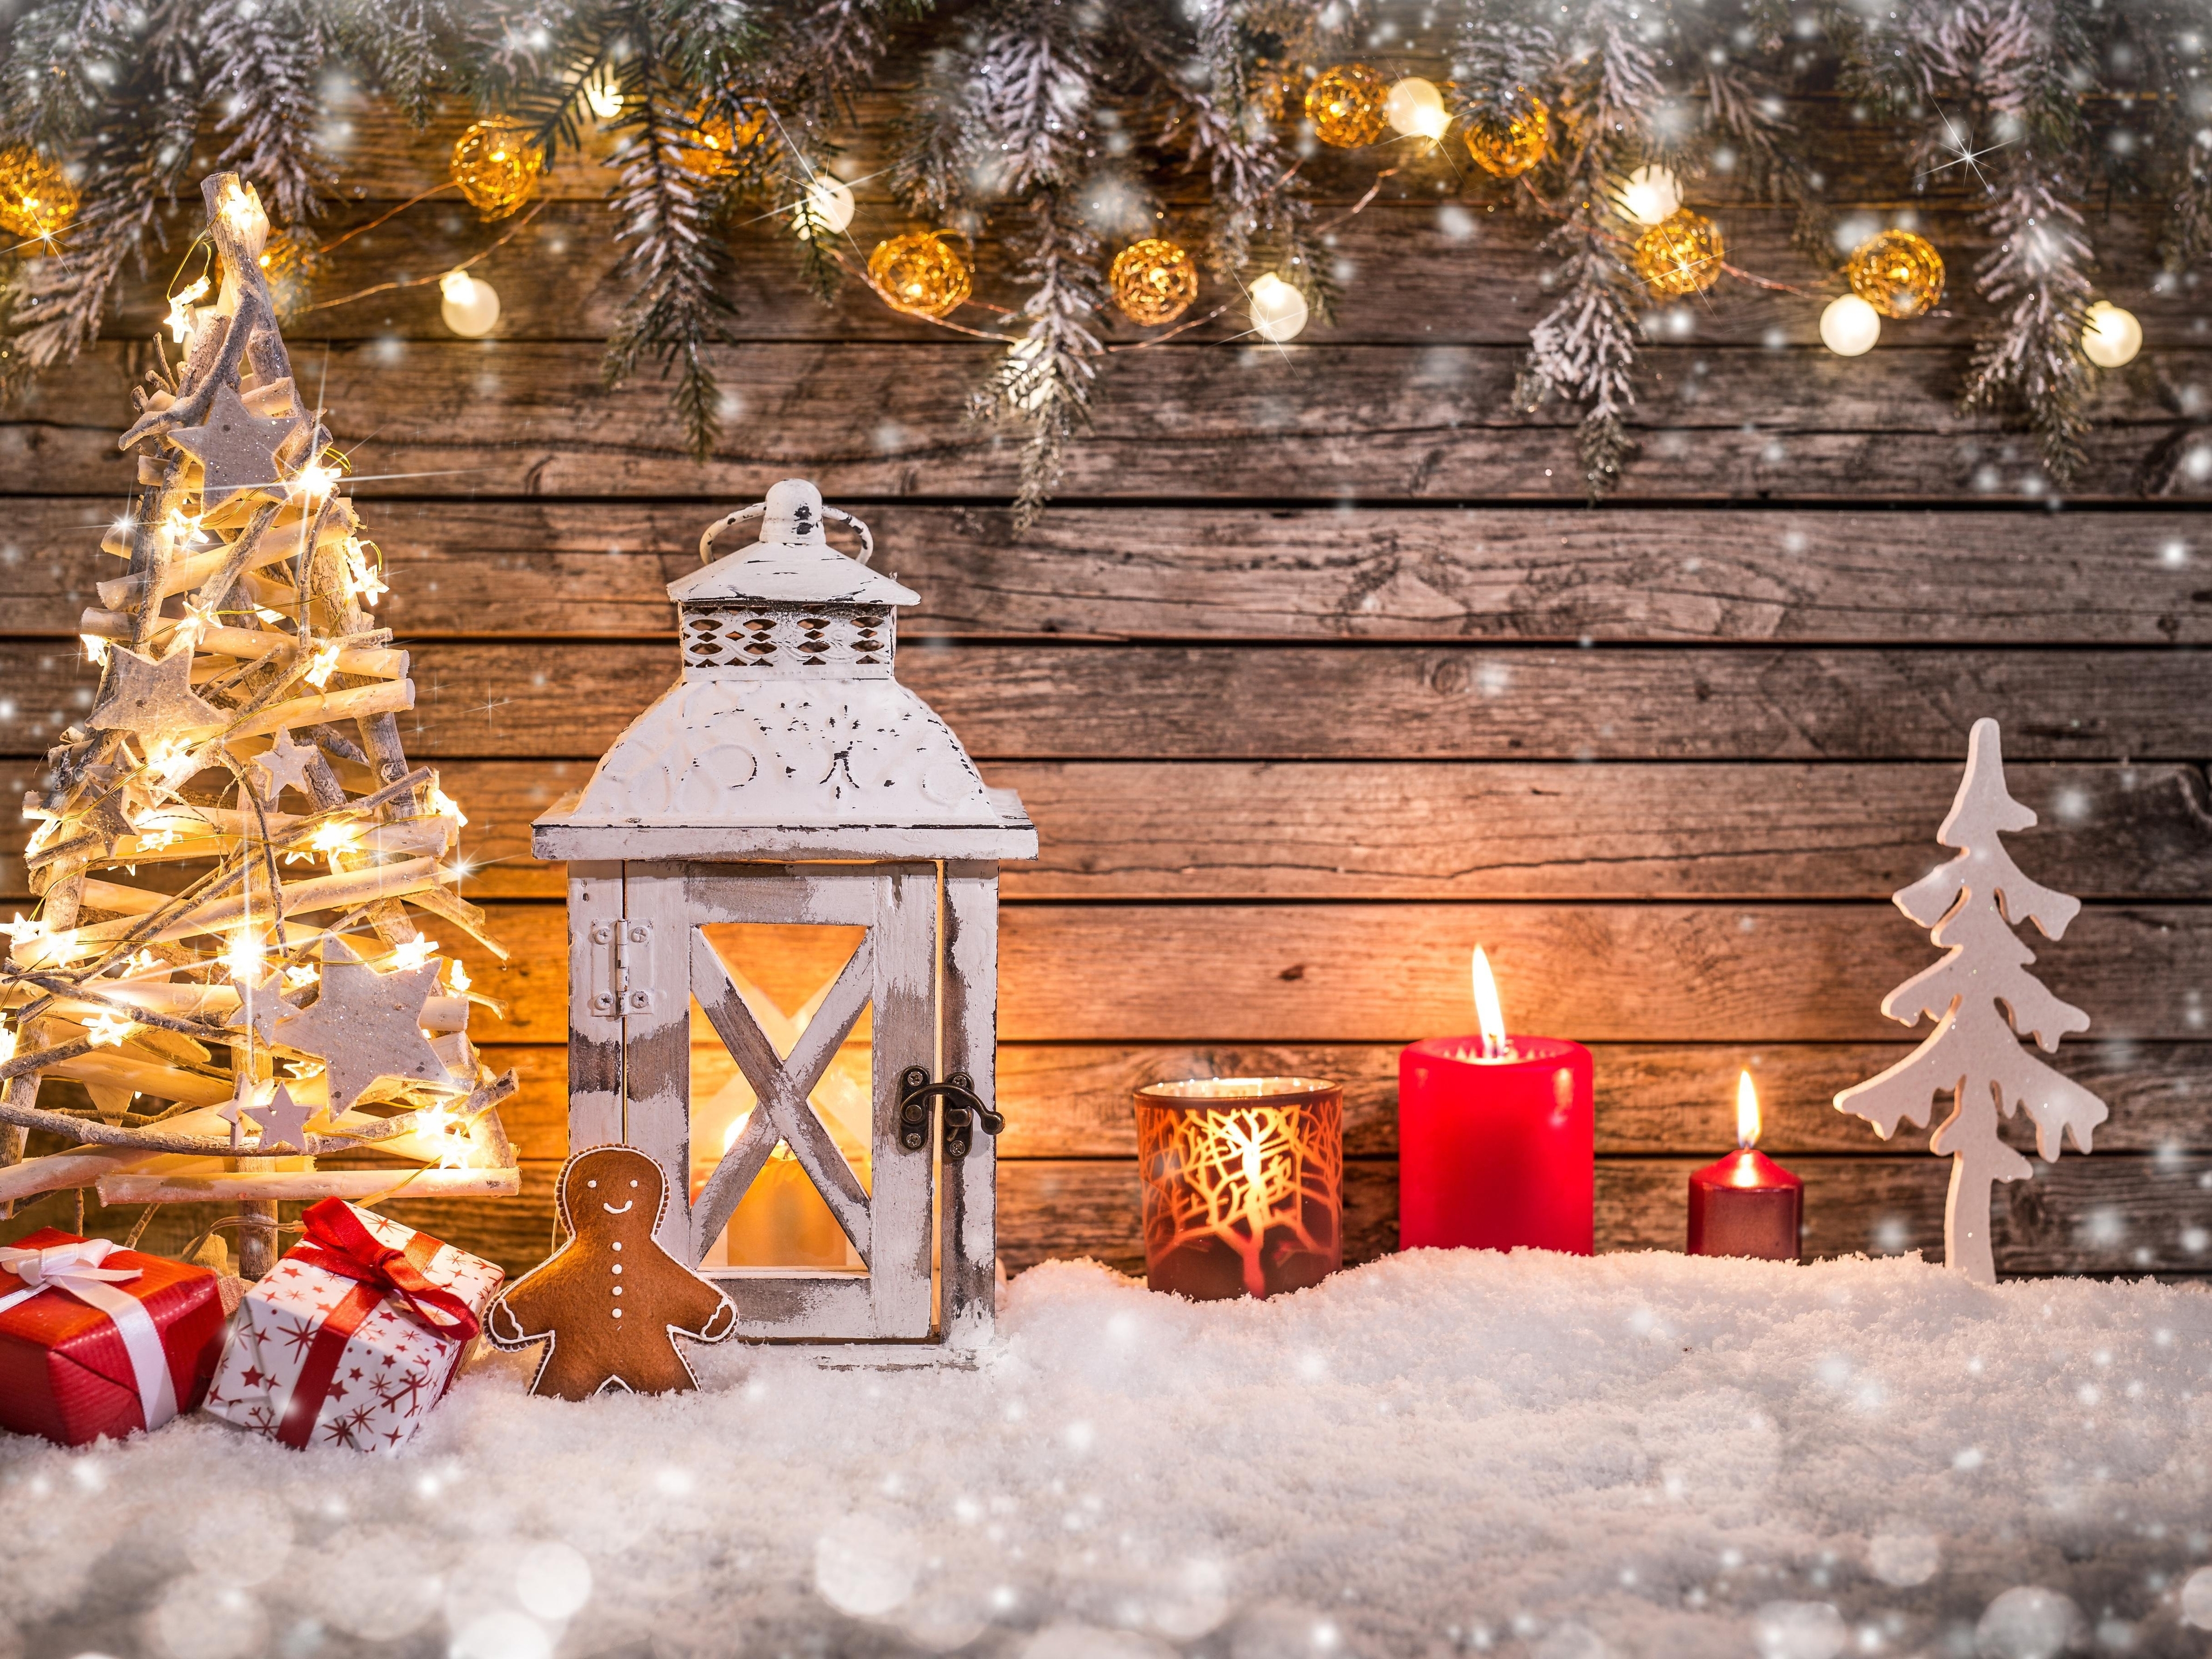 Картинка: Новый год, елка, подарки, украшение, фонарь, свечи